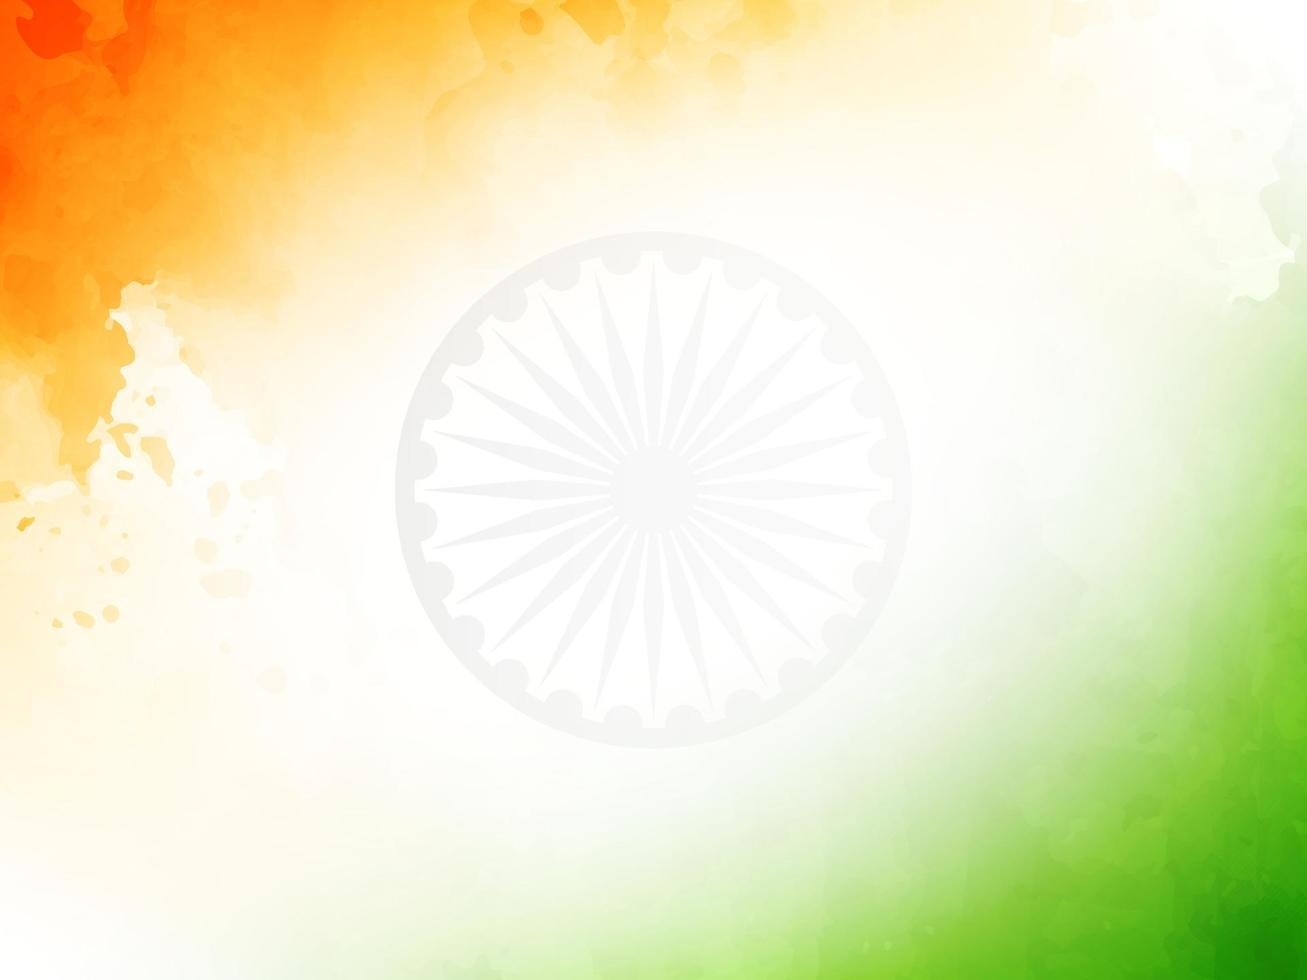 indische flagge thema tag der republik aquarell textur patriotischer hintergrund vektor